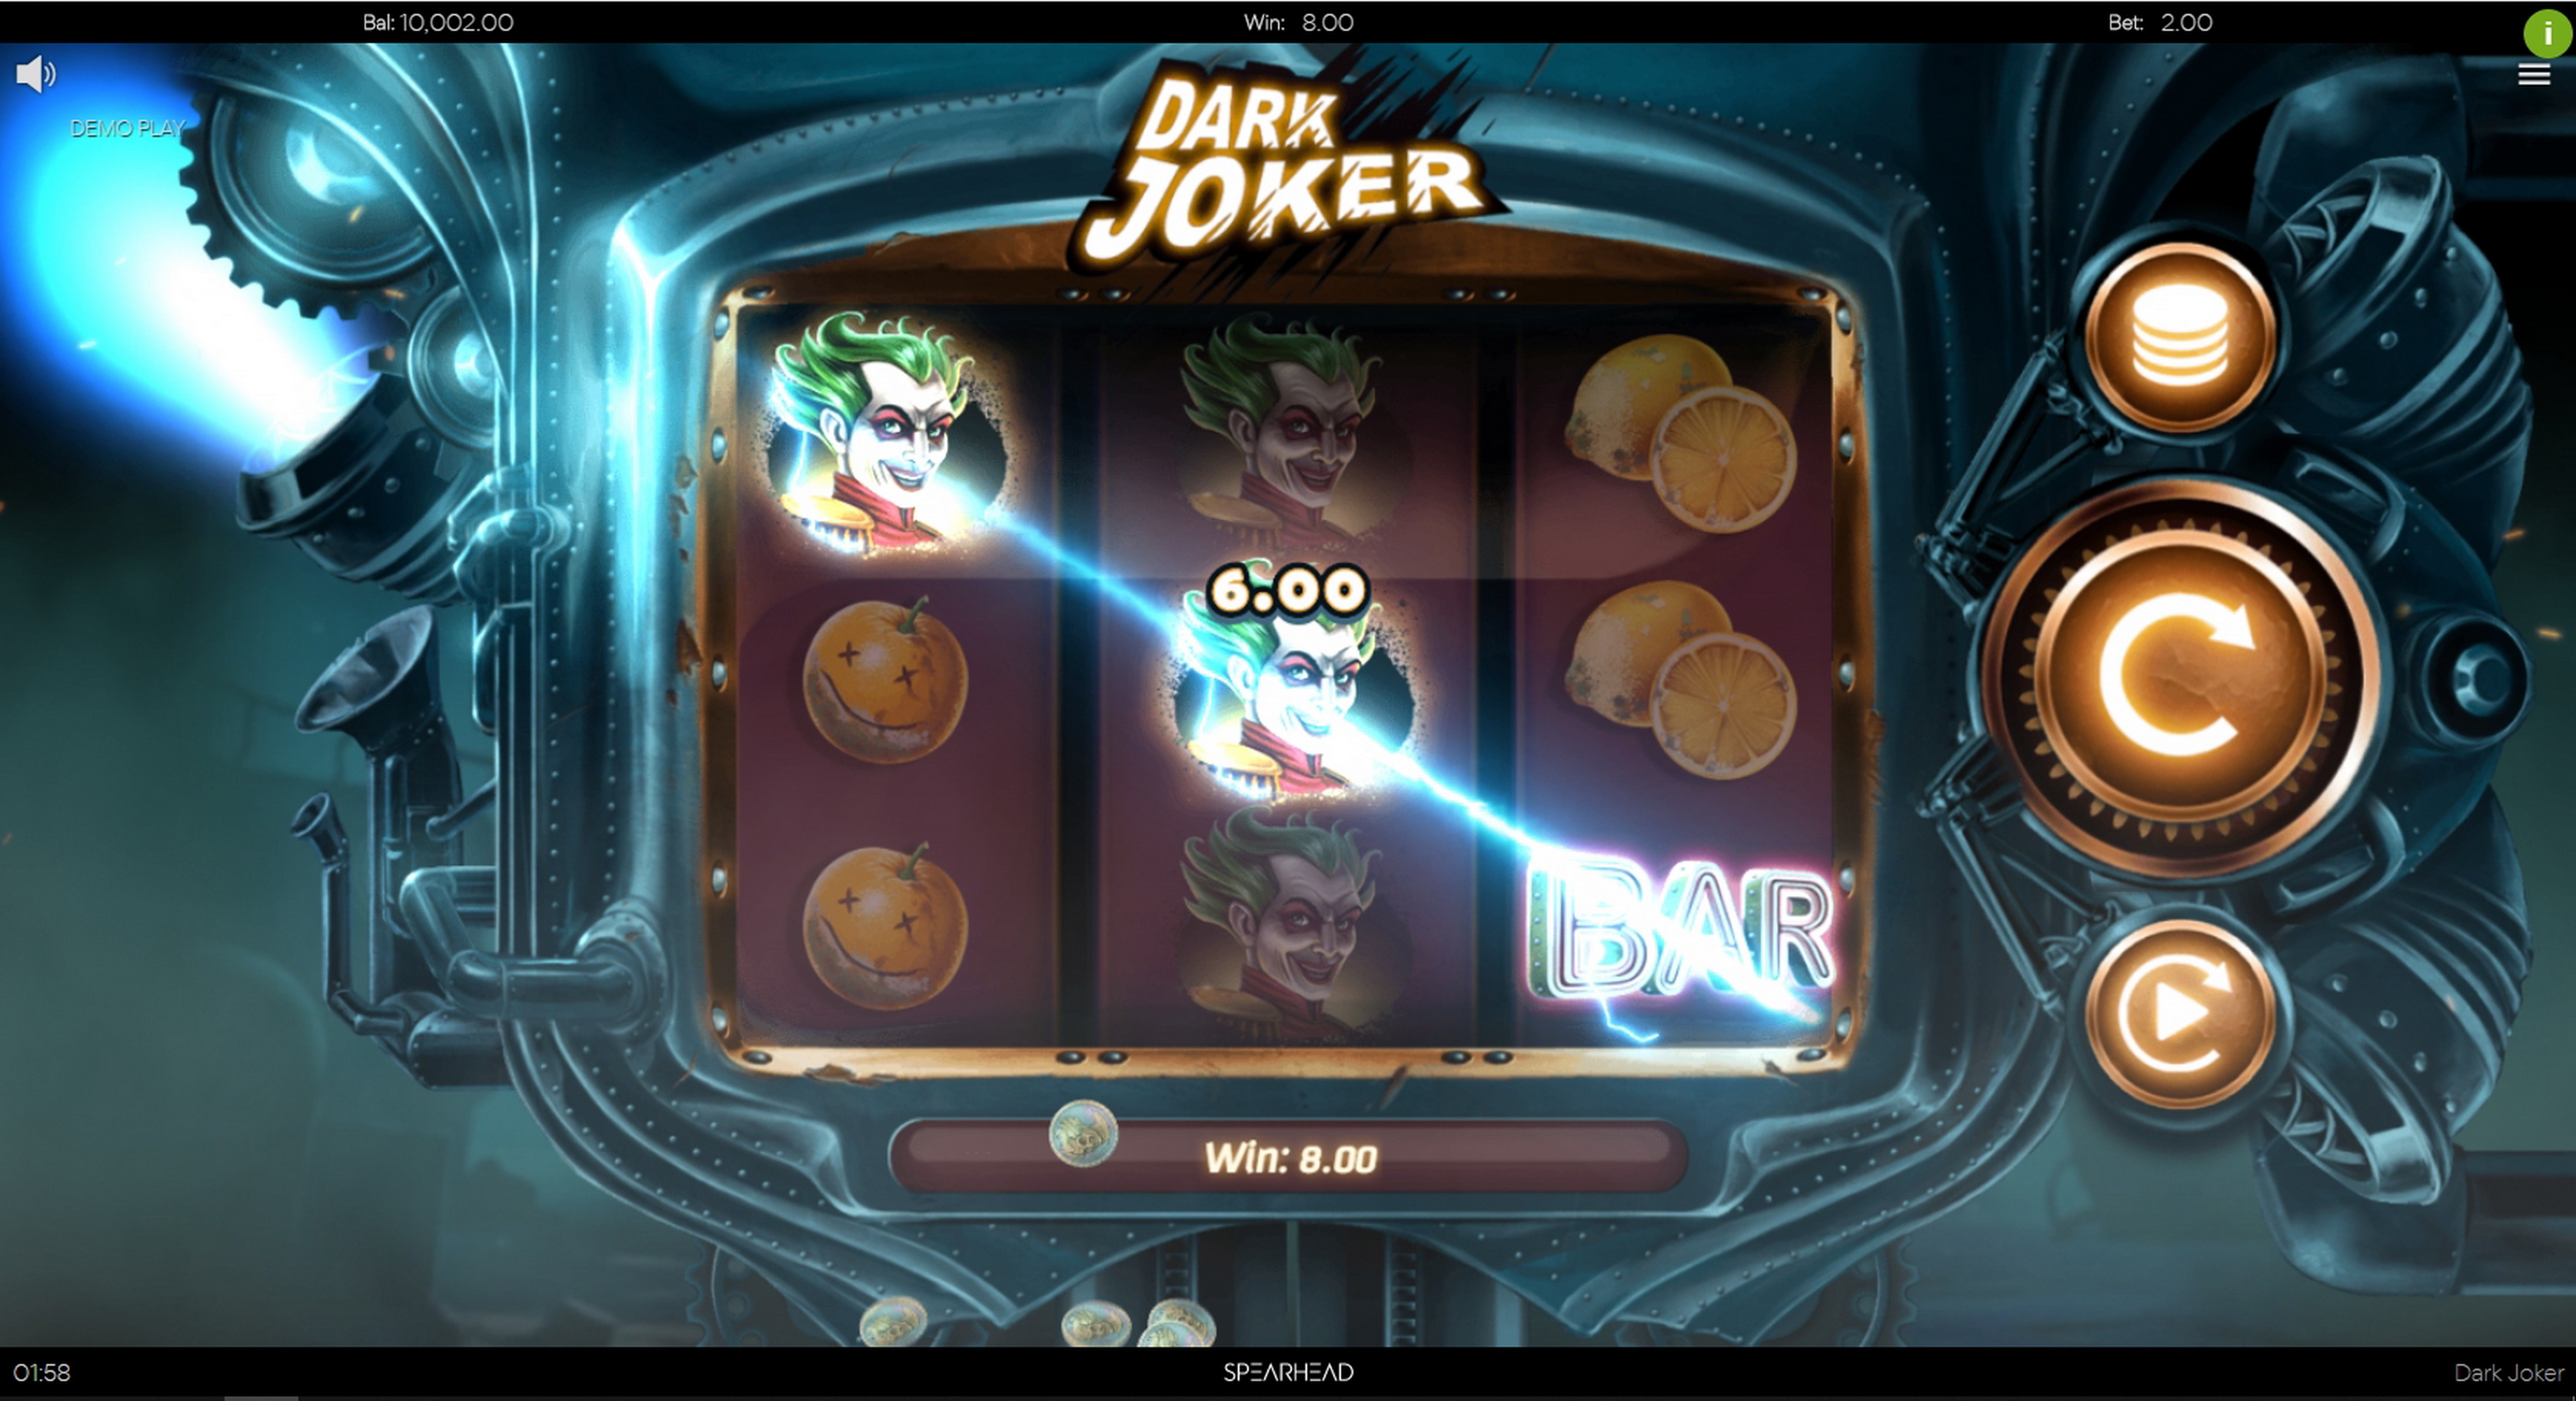 Win Money in Dark Joker Free Slot Game by Spearhead Studios